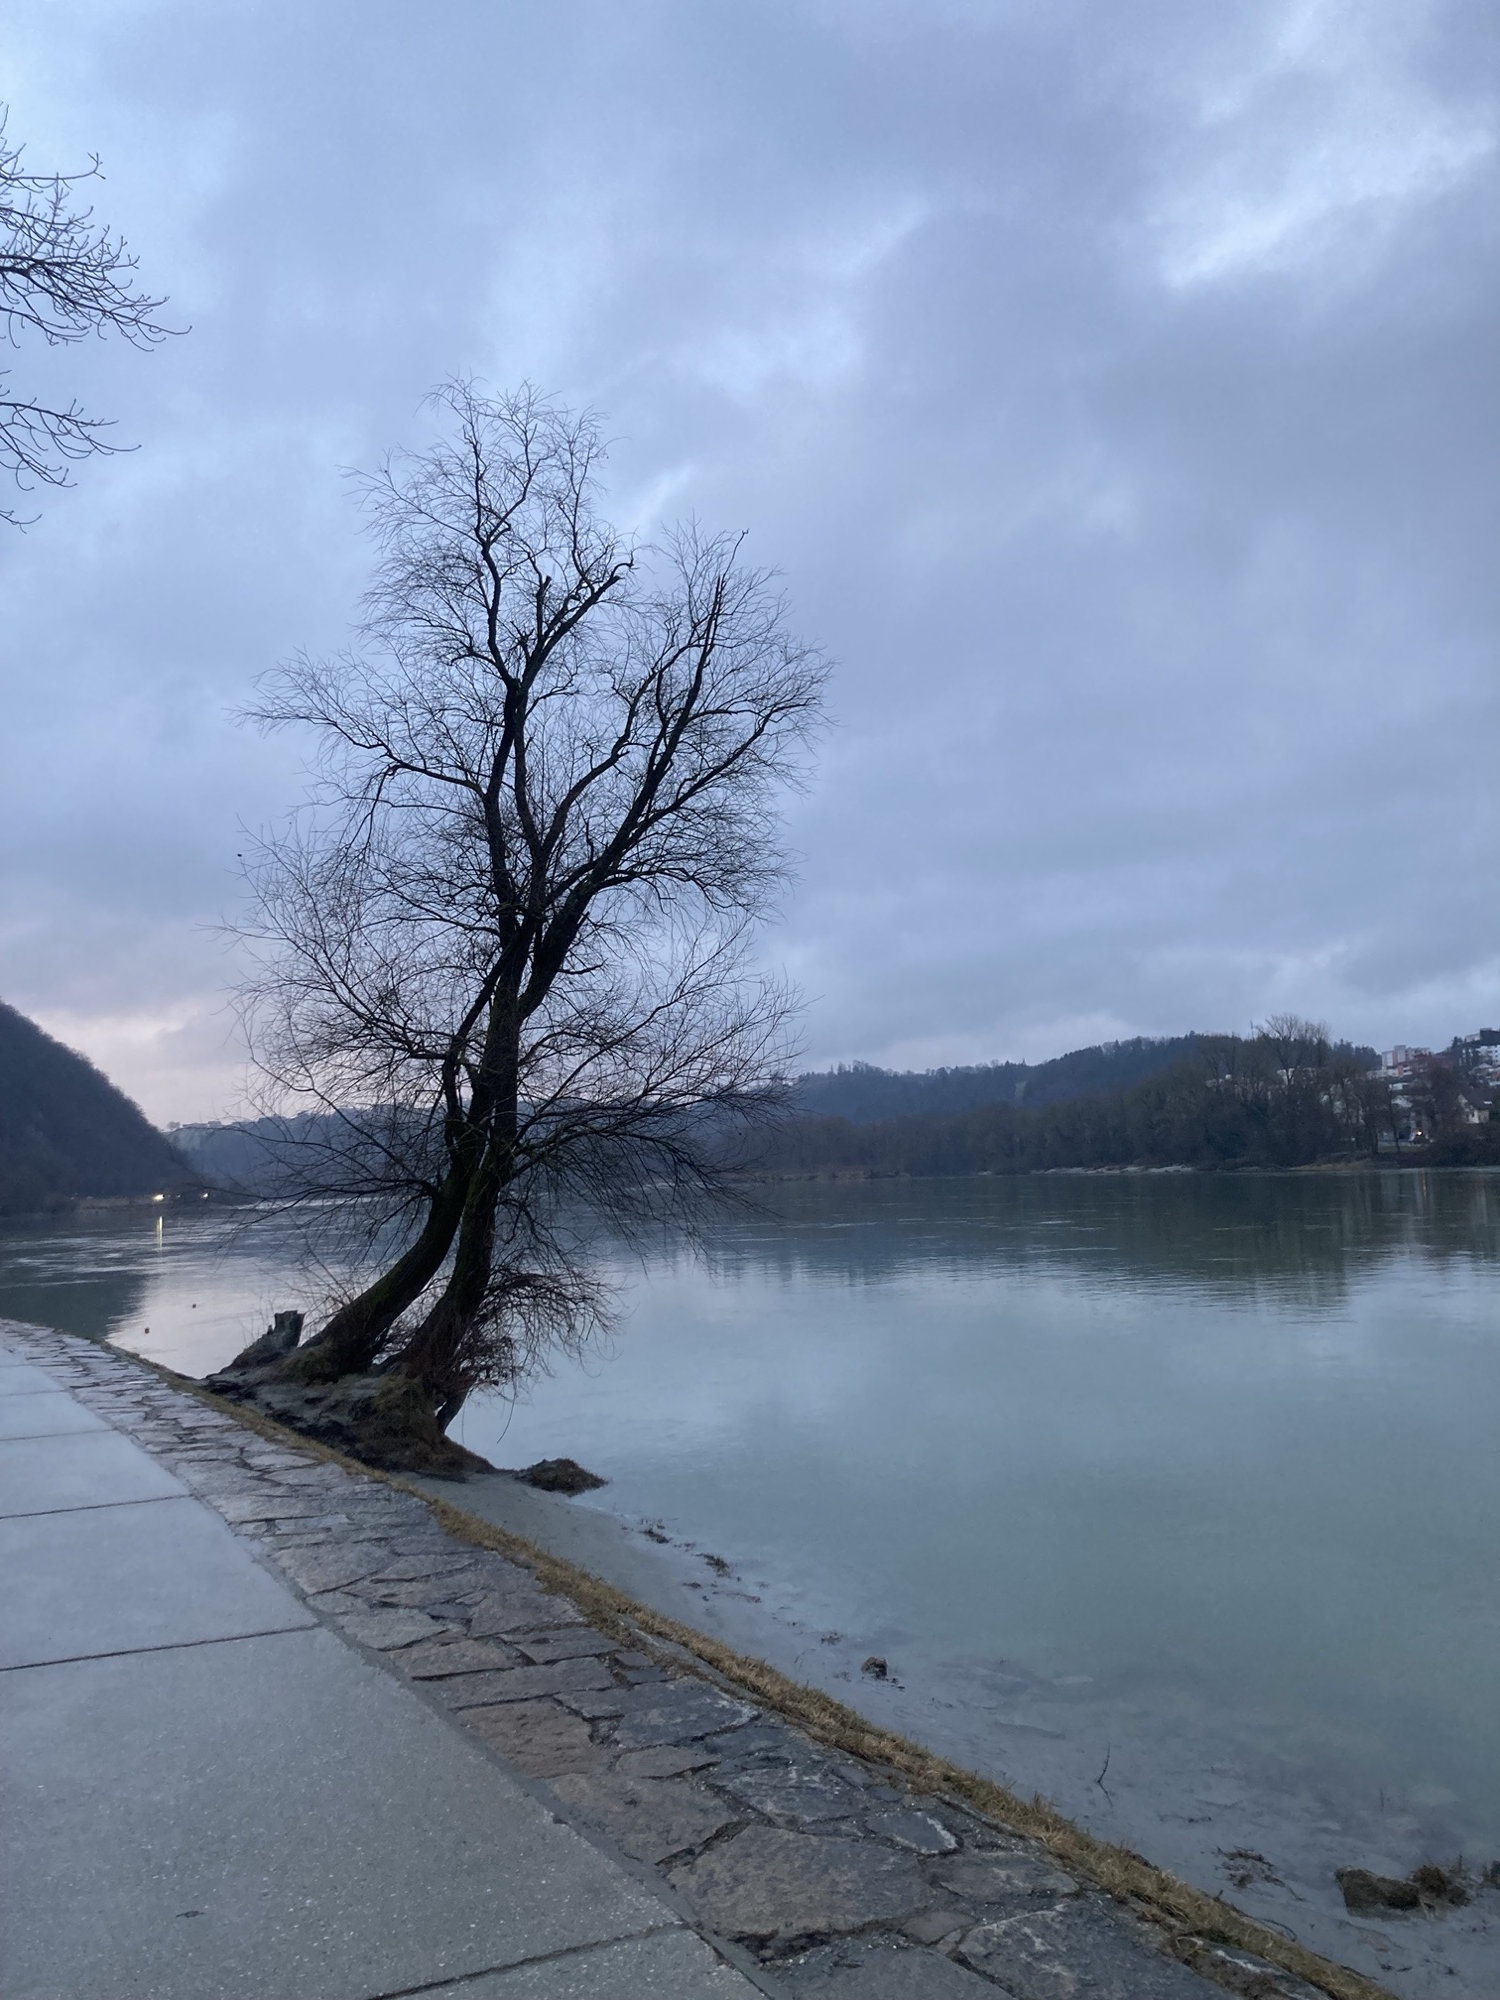 Ausblick auf den Zusammenfluss von Donau und Inn in Blickrichtung Osten, ein Baum wächst schräg vom Ufer aus über den Fluss, der Himmel ist grau, es dämmert hinter der Flussbiegung ist noch ein hellerer Lichtstreifen zu sehen